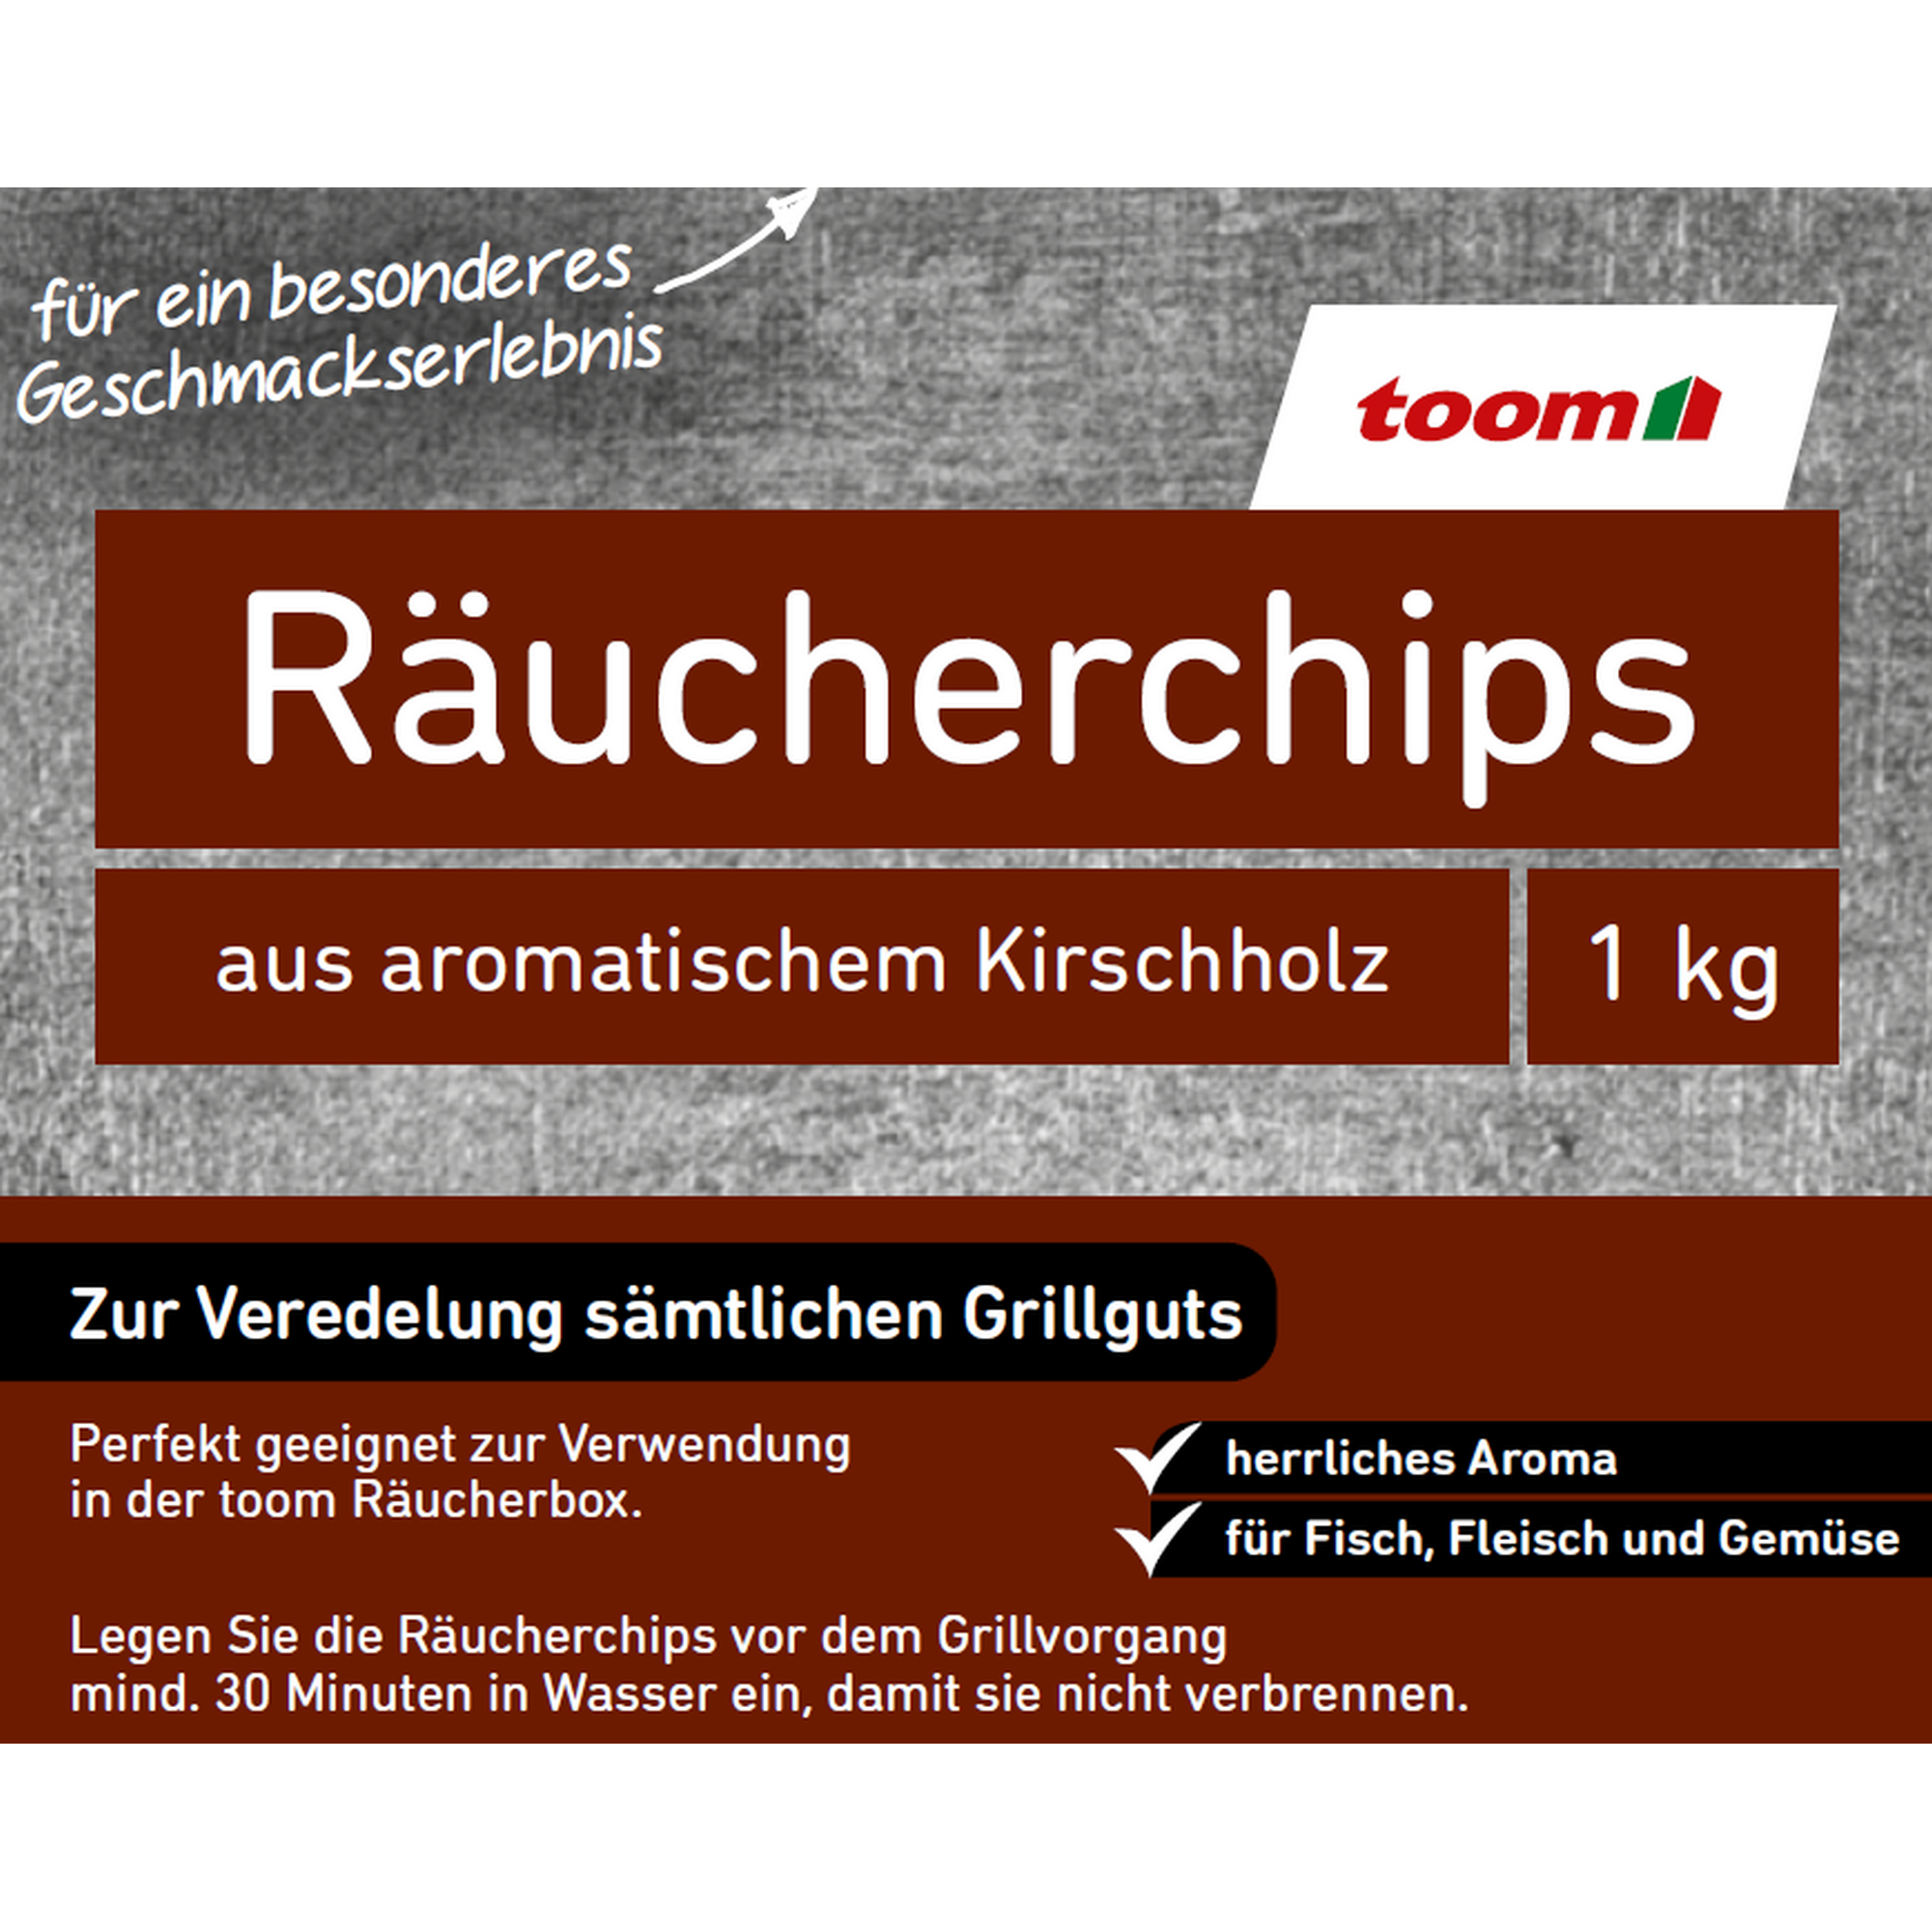 Räucherchips Kirschholz 1 kg + product picture